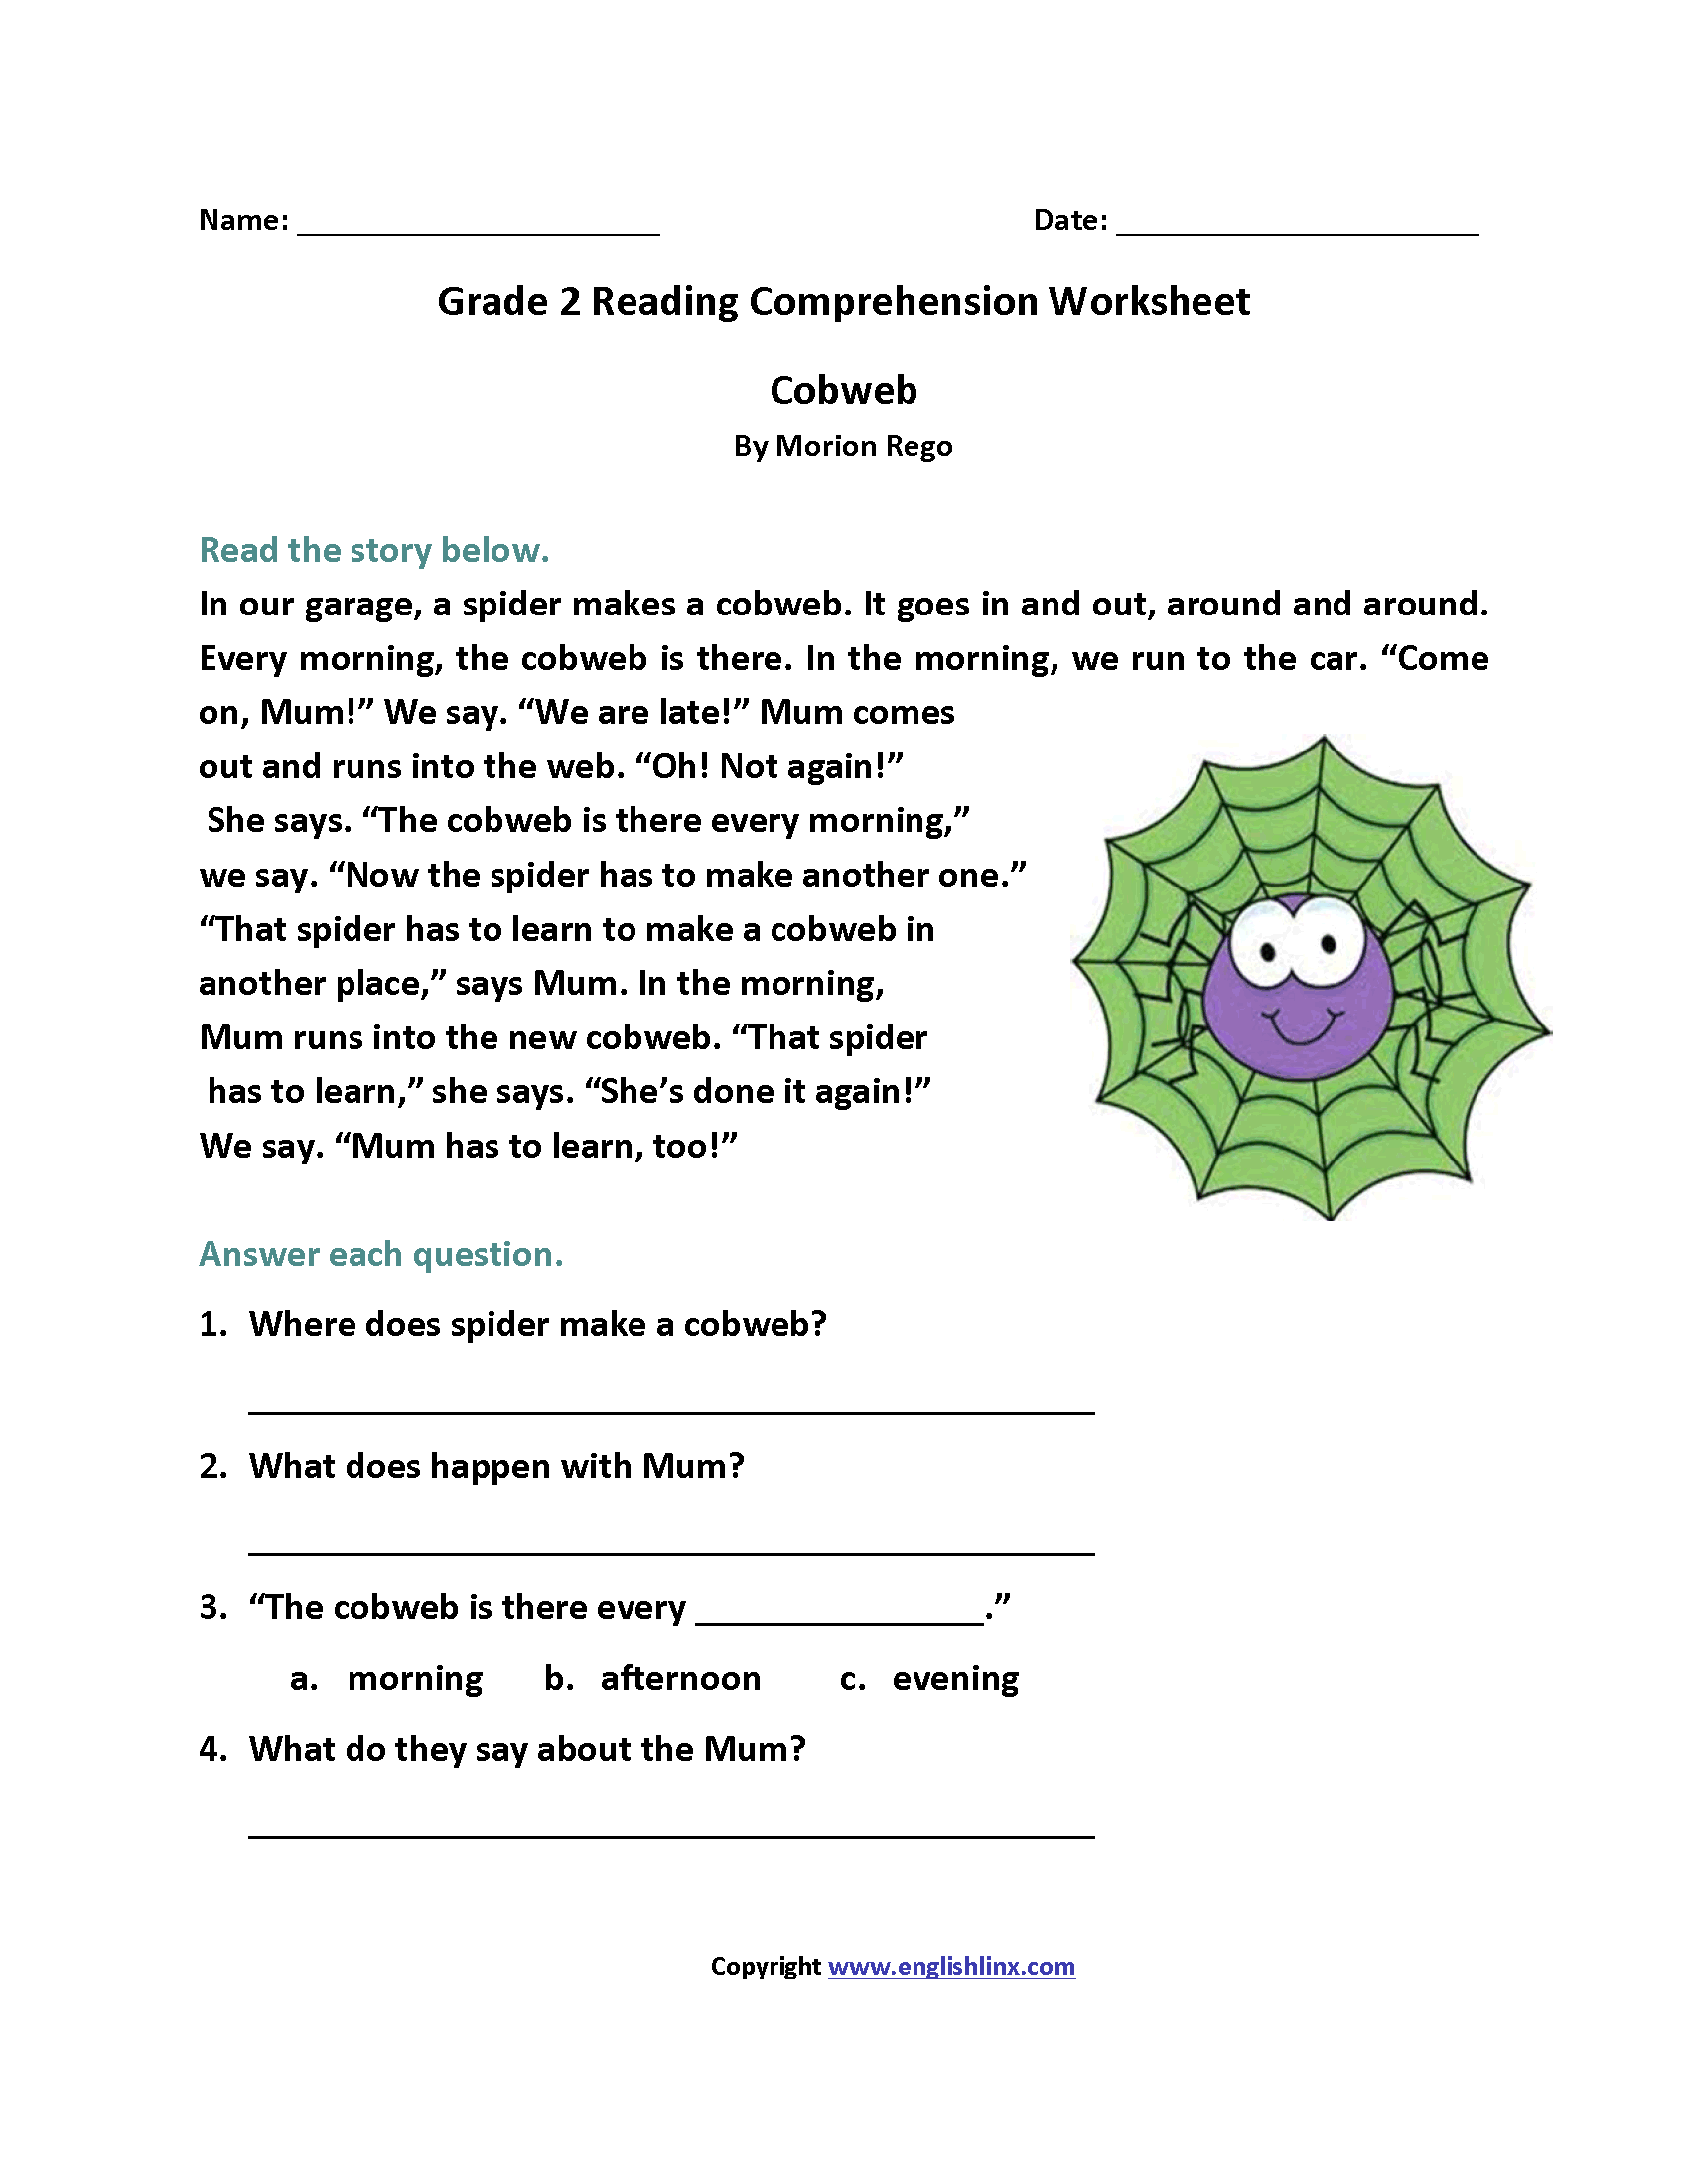 Free Printable Comprehension Worksheet For Grade 2